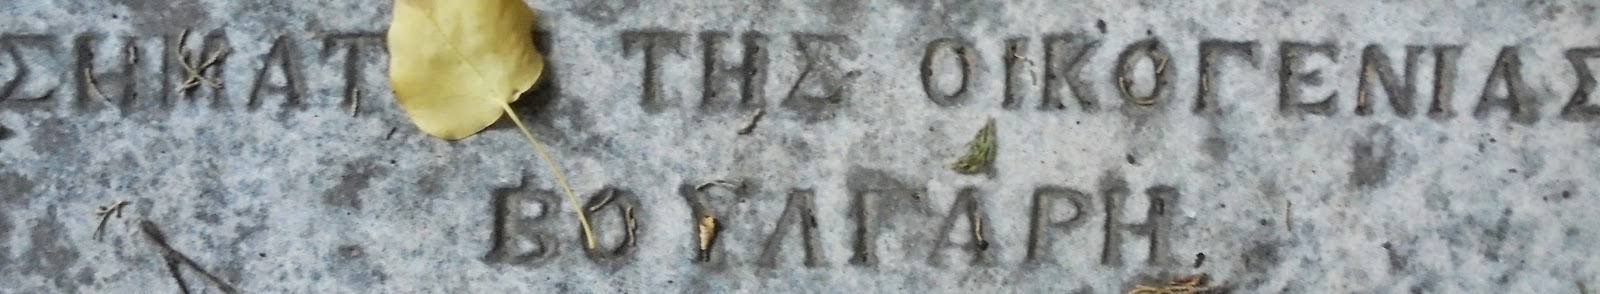 το ταφικό μνημείο της Σταμούλας Βαφέα στο ναό του Παντοκράτορα Λευκάδας